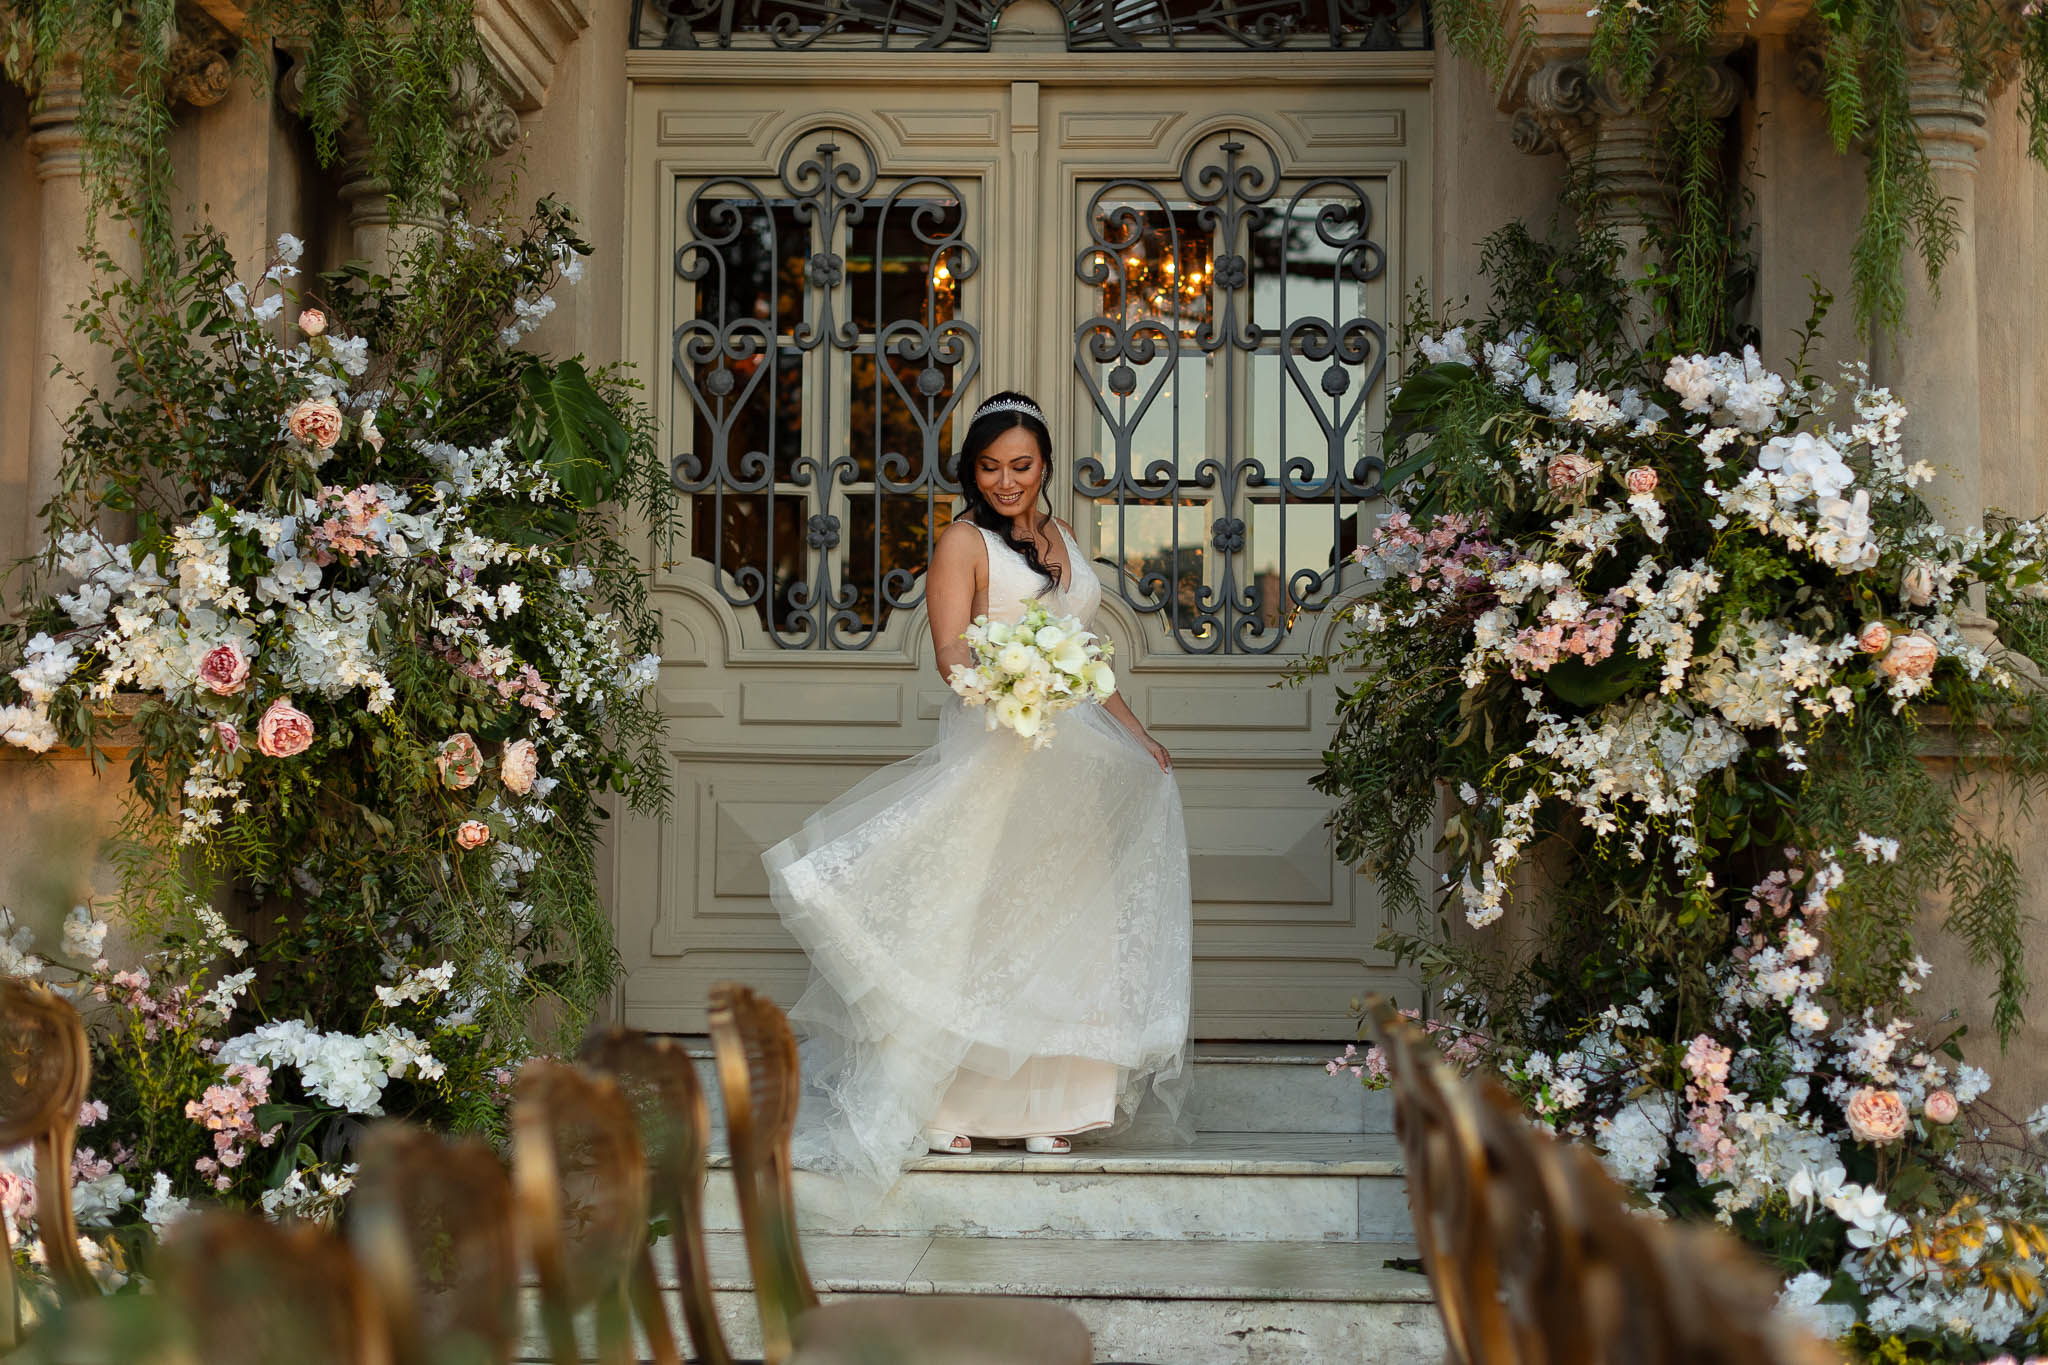 Casamento clássico: fotos da noiva na decoração - Foto Emerson Fiuza 